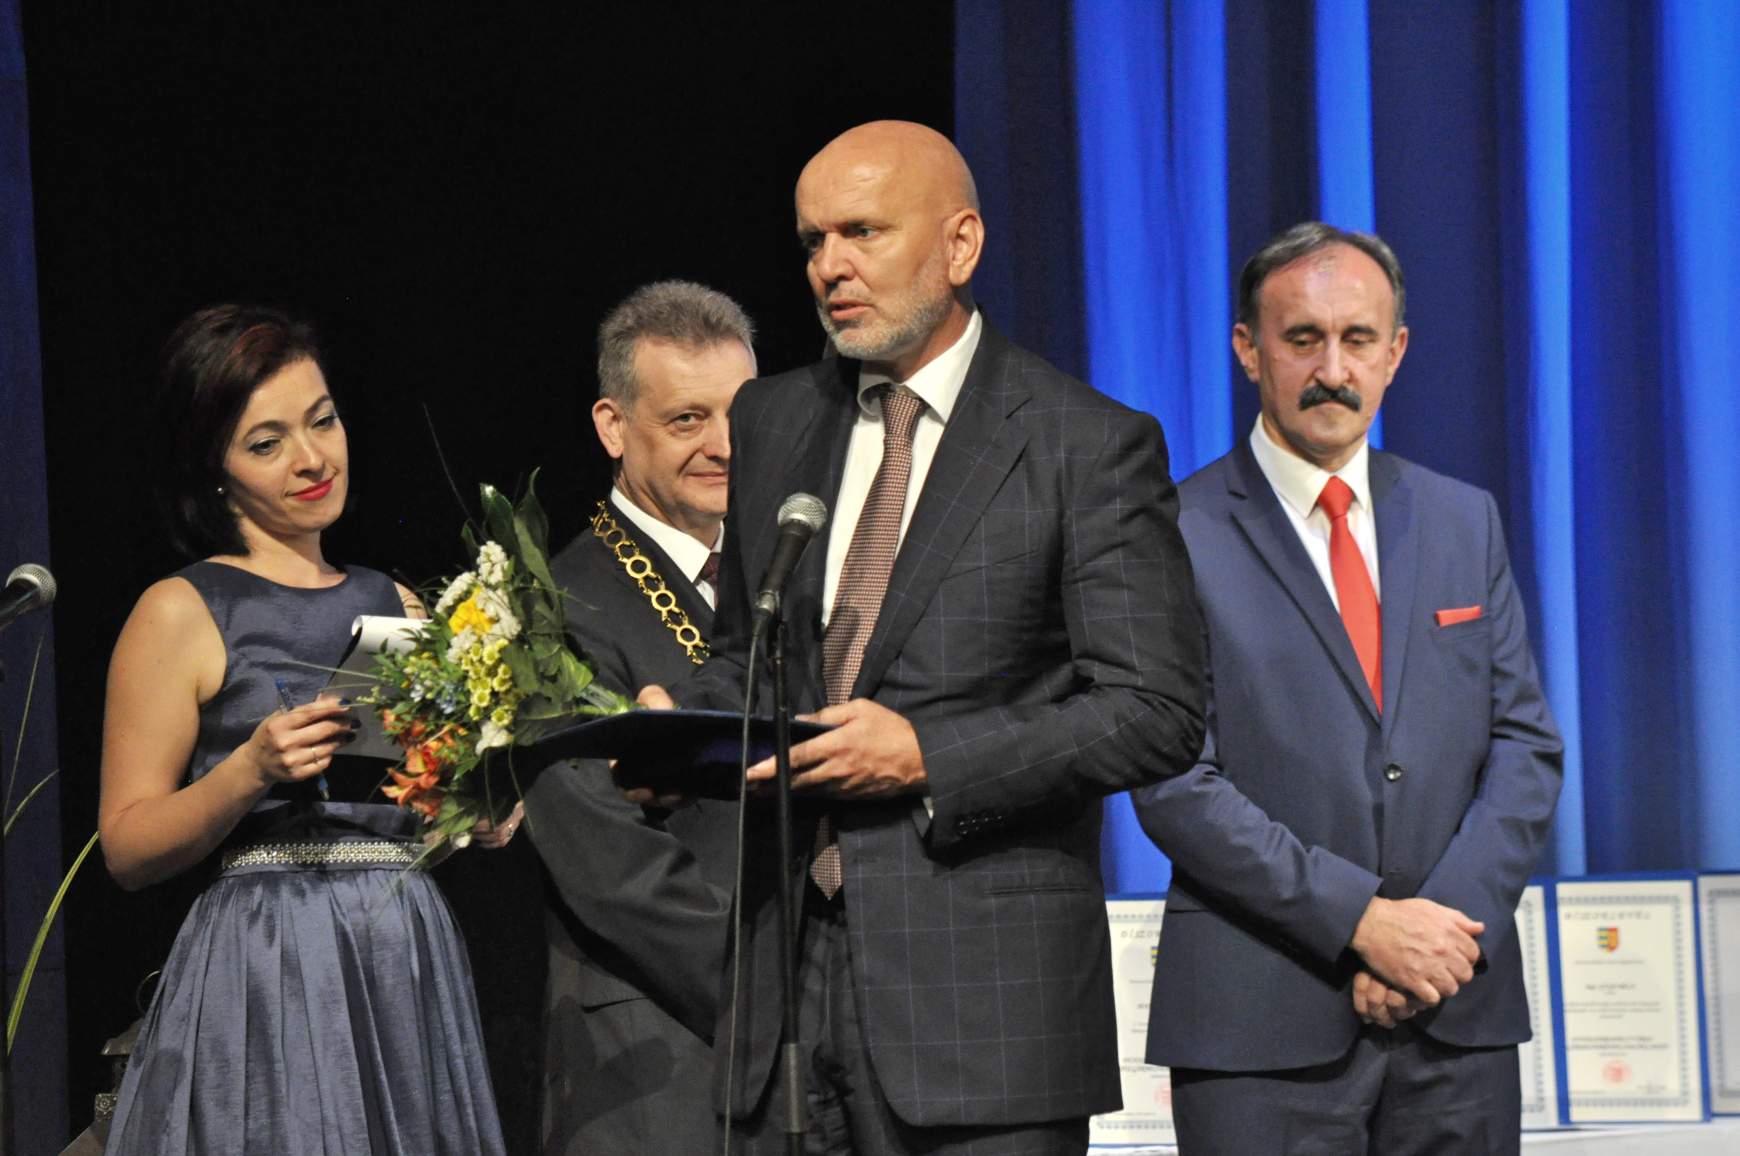 Világi Oszkár Pro Urbe díjban részesült